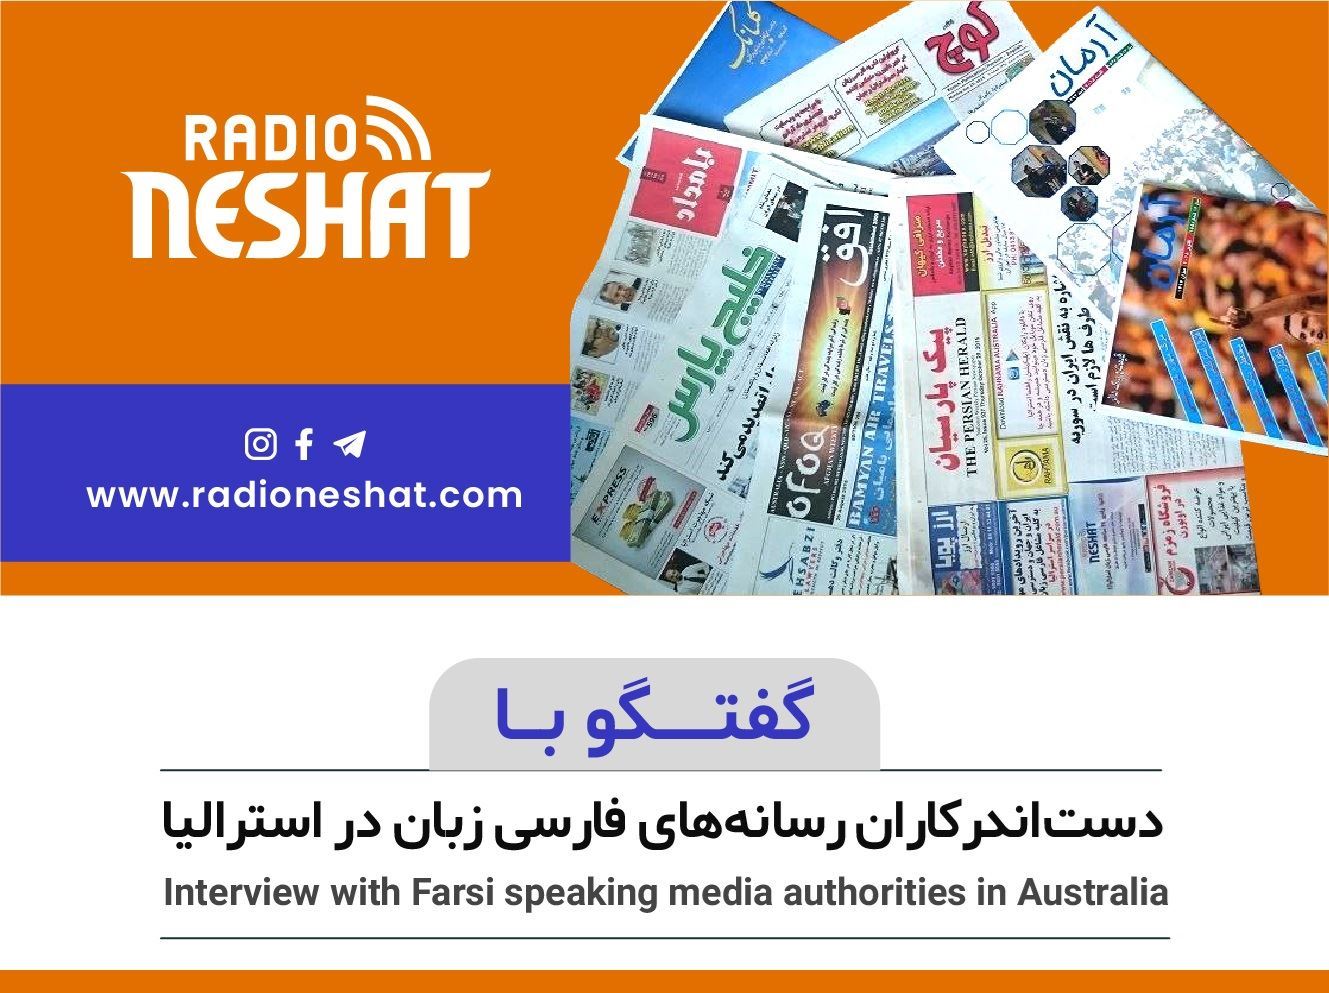 گزارشی از ایران سمیه نجفی : خبرنگار رادیو نشاط در ایران
